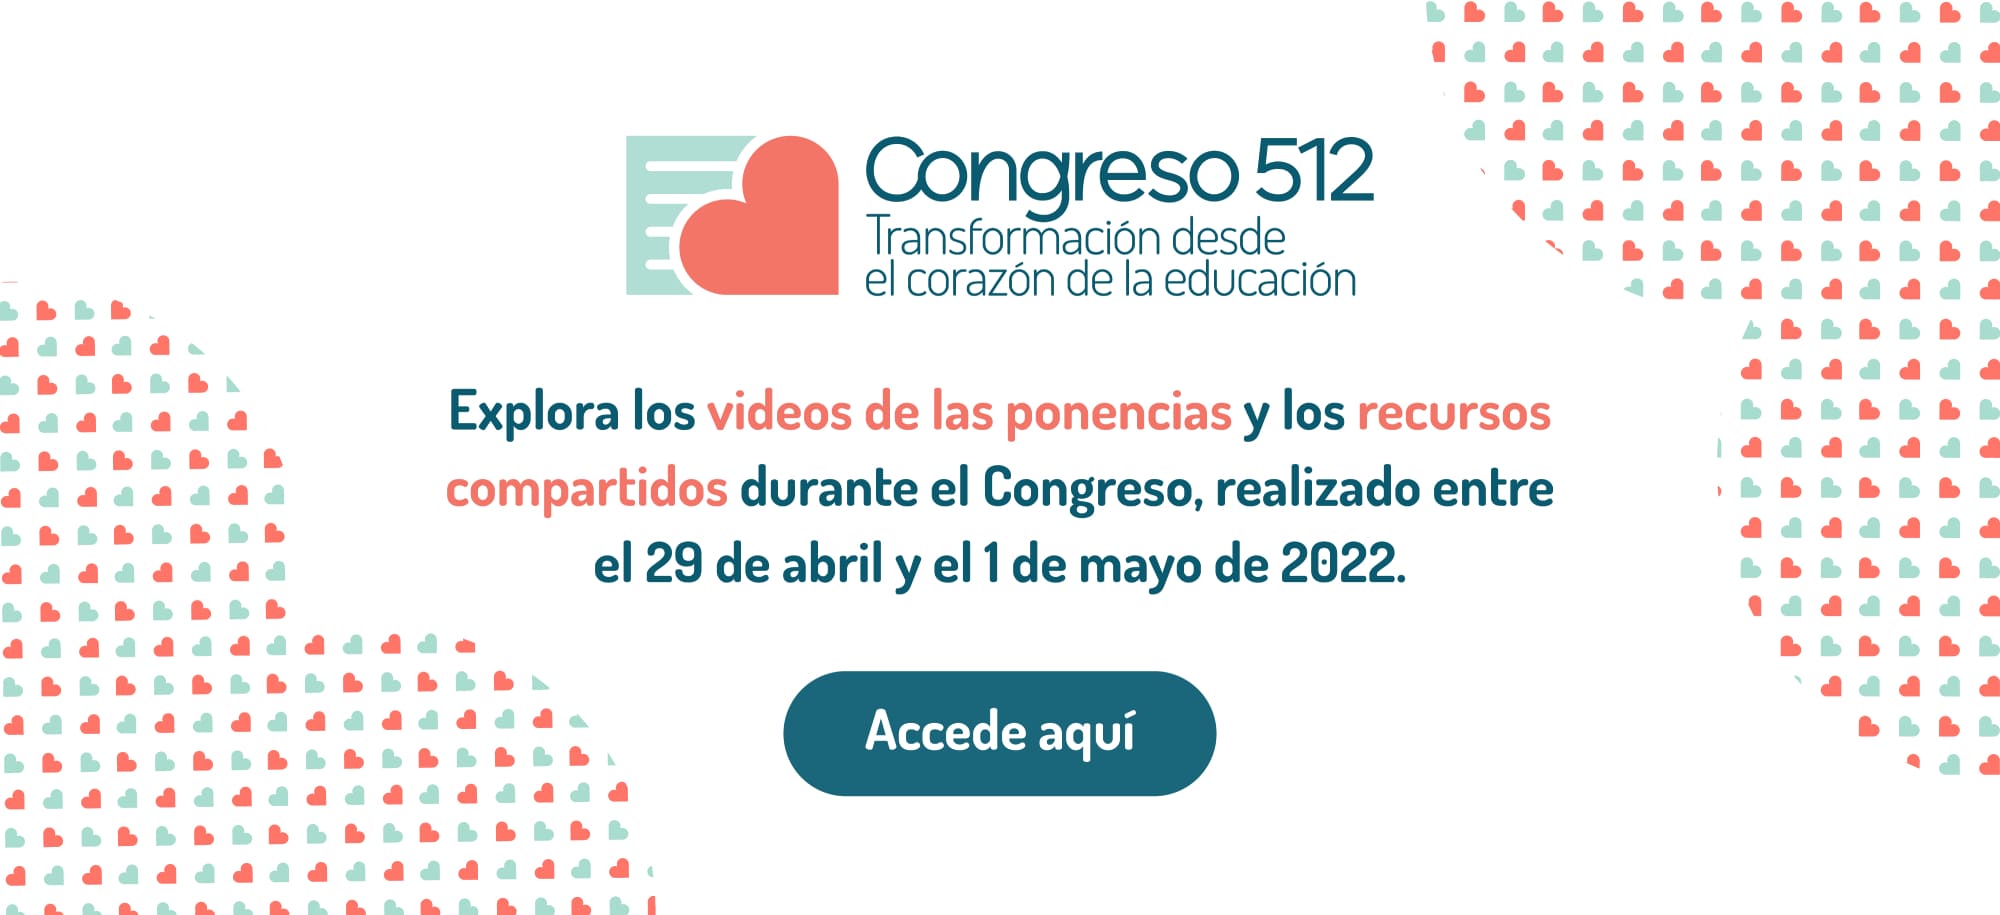 Congreso 512, Explora los videos de las ponencias y los recursos compartidos durante el Congreso, realizado entre el 29 de abril y el 1 de mayo de 2022. Accede Aquí